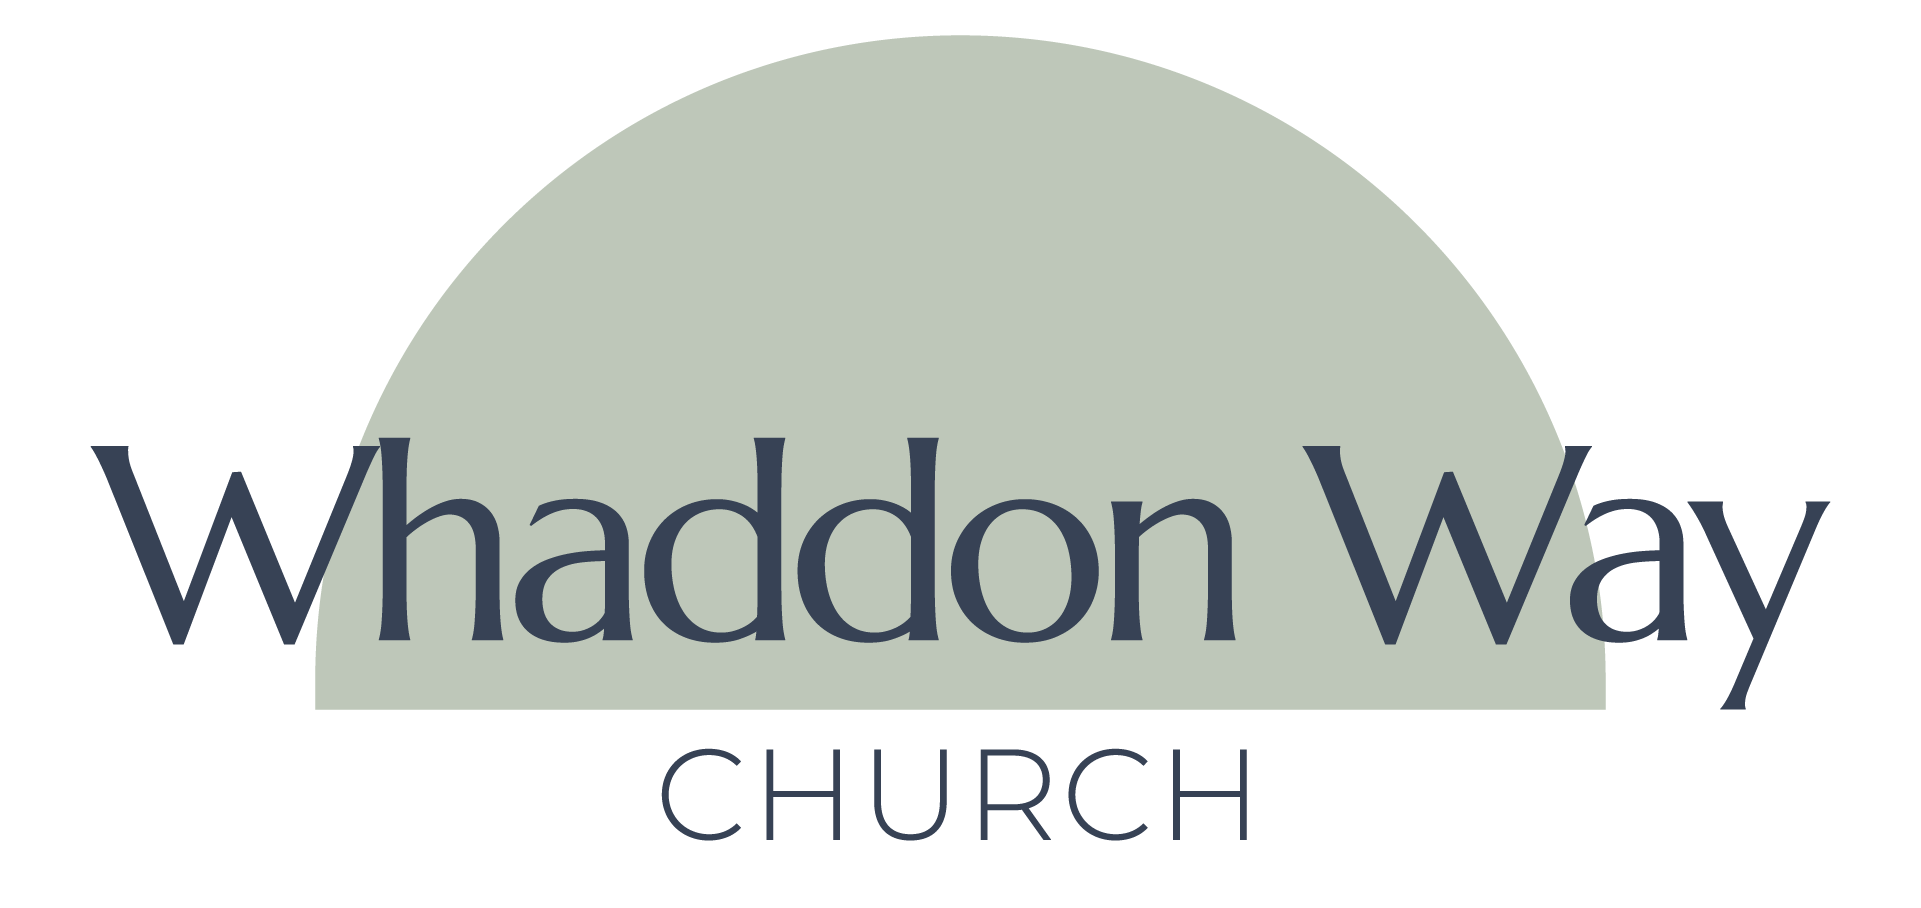 Whaddon Way Church